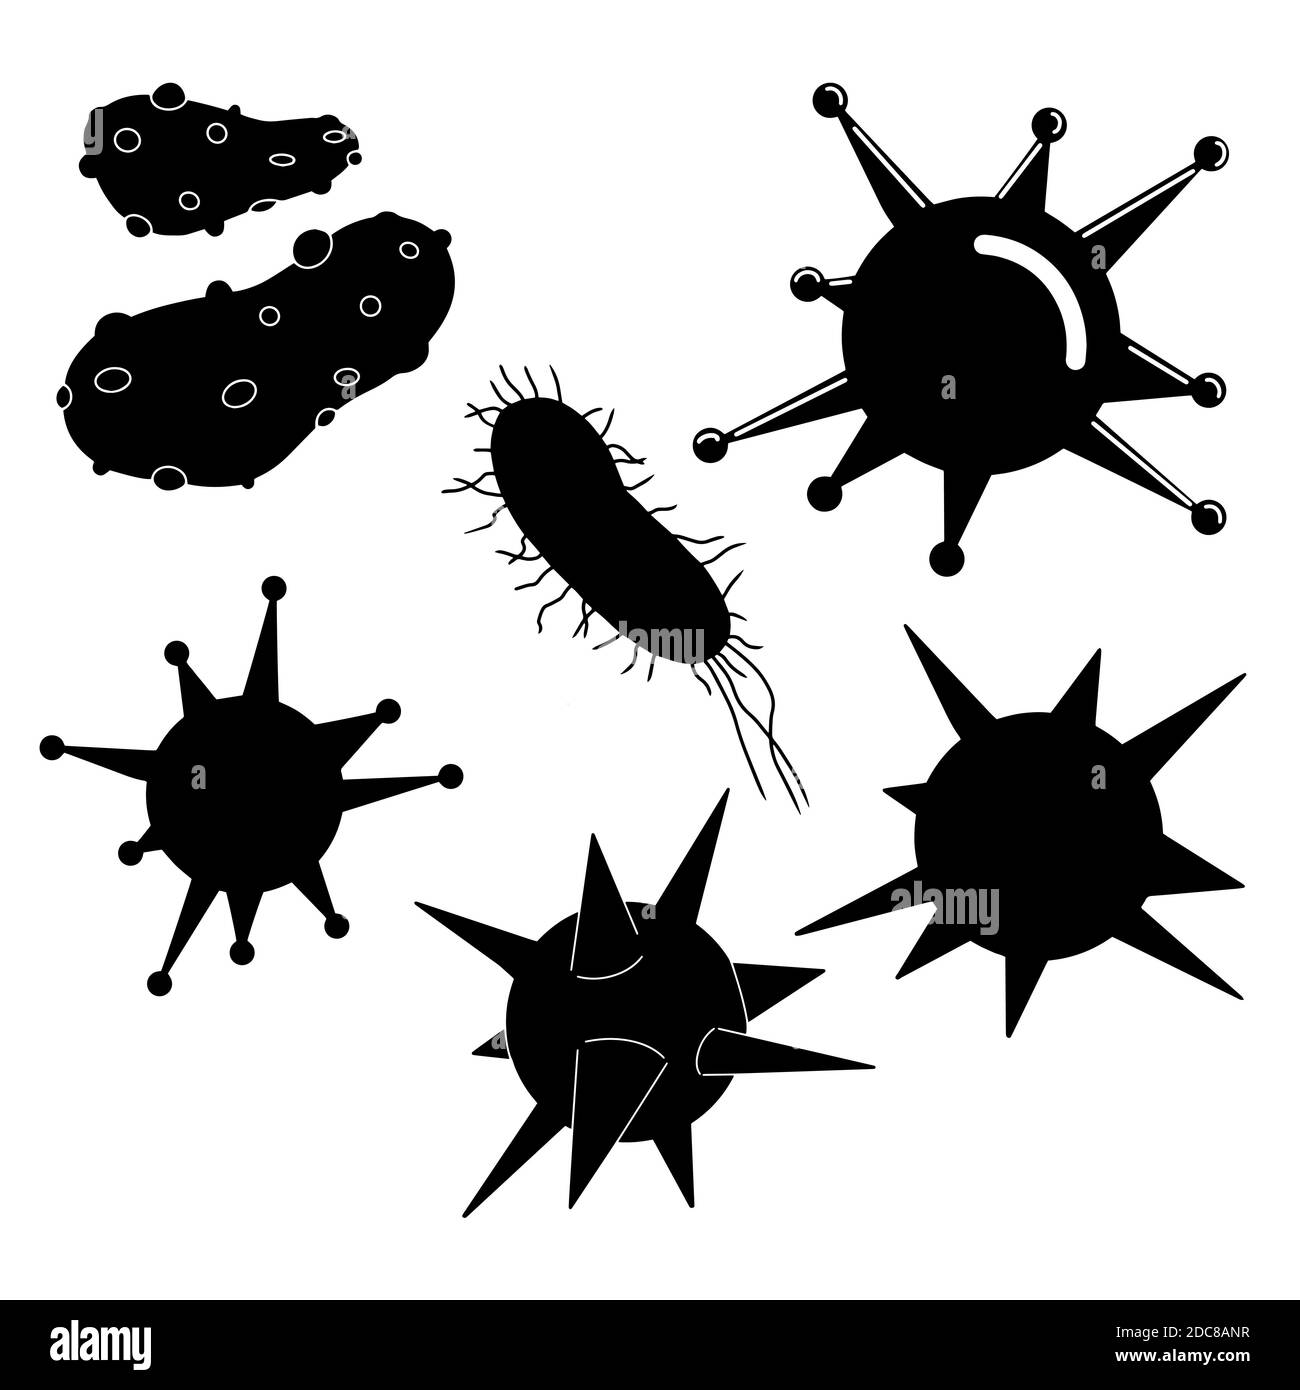 Ensemble de virus, icônes de silhouette de bactéries. Microbes, microbiologie, grippe, grippe, maladie, micro-organisme de laboratoire minuscule. Vecteur isolé. Sale et infecté, contagieux. Illustration de Vecteur